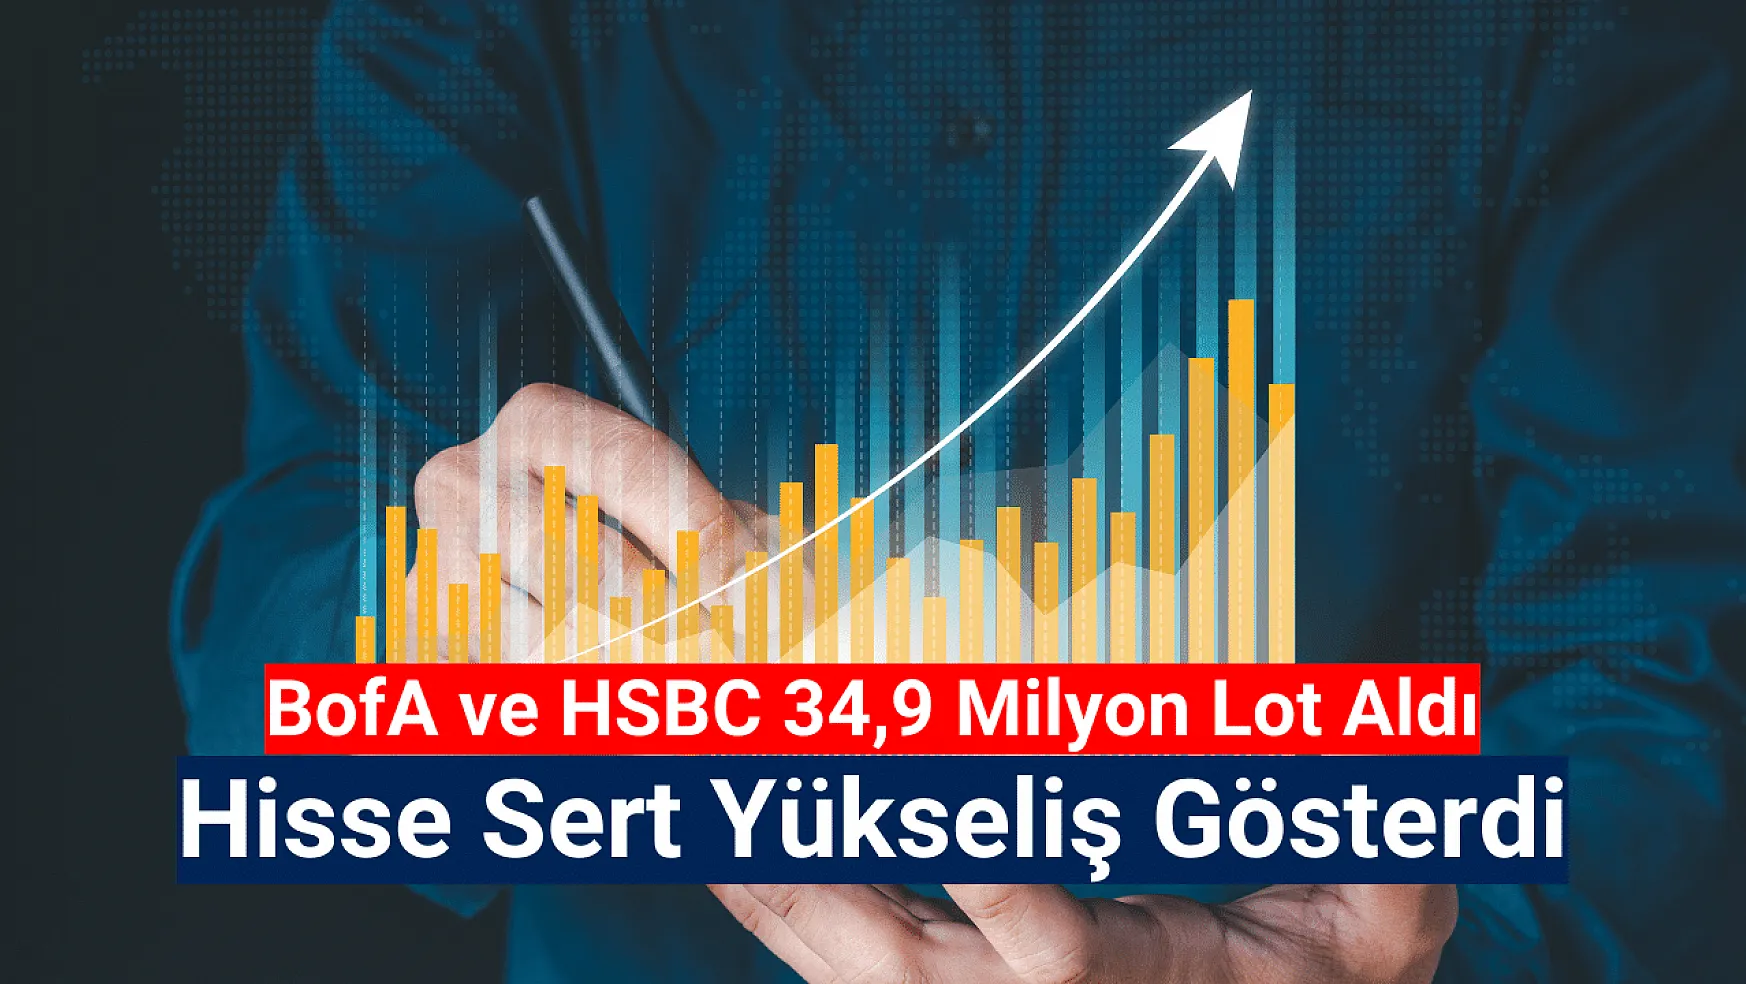 BofA ve HSBC bu hisseden 34,9 milyon lot aldı!